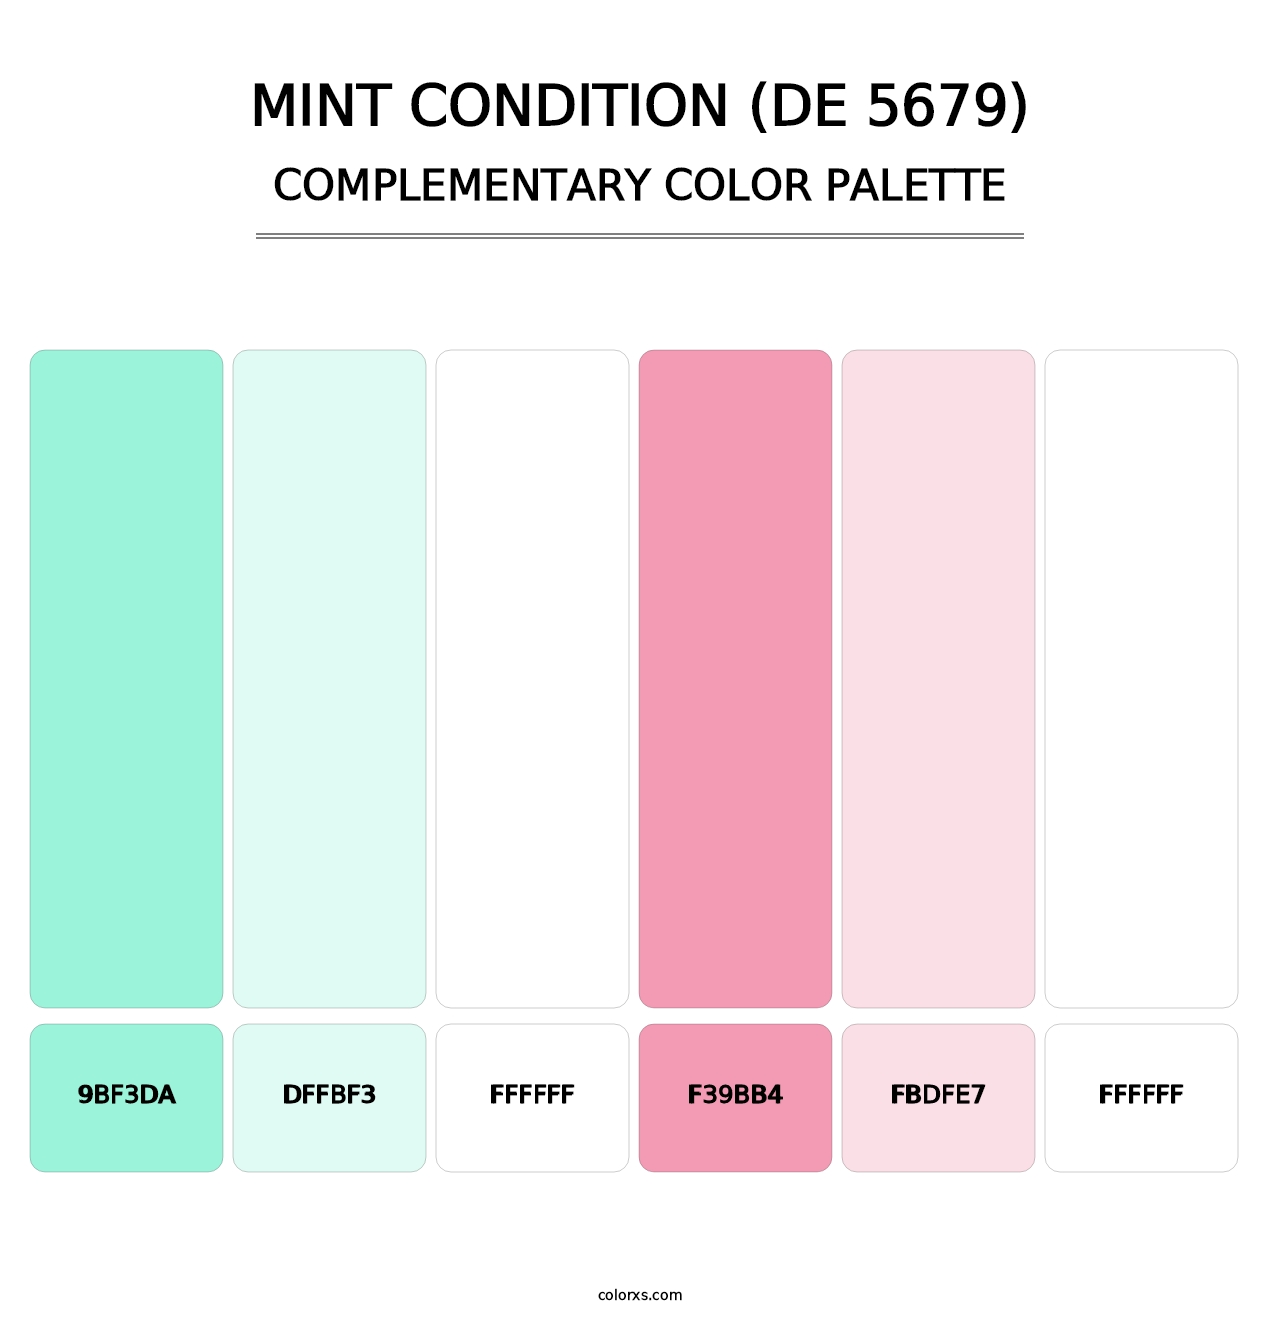 Mint Condition (DE 5679) - Complementary Color Palette